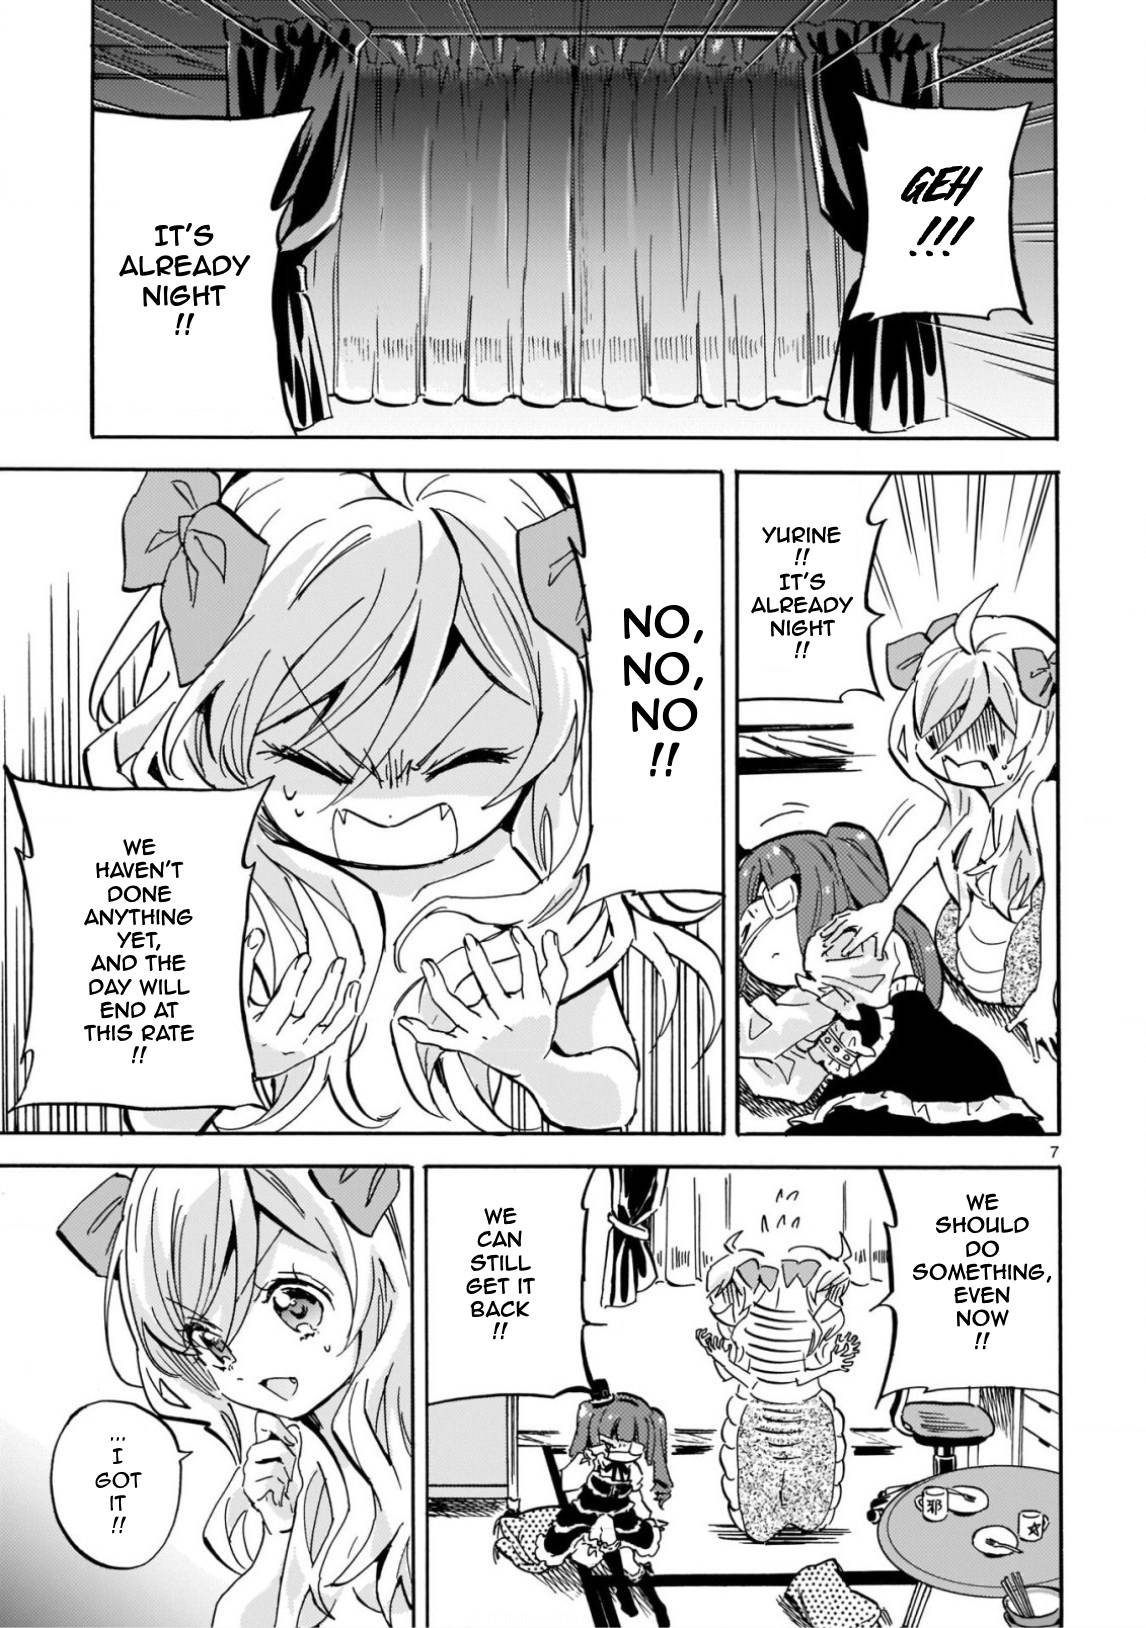 Jashin-chan Dropkick chapter 216 page 7